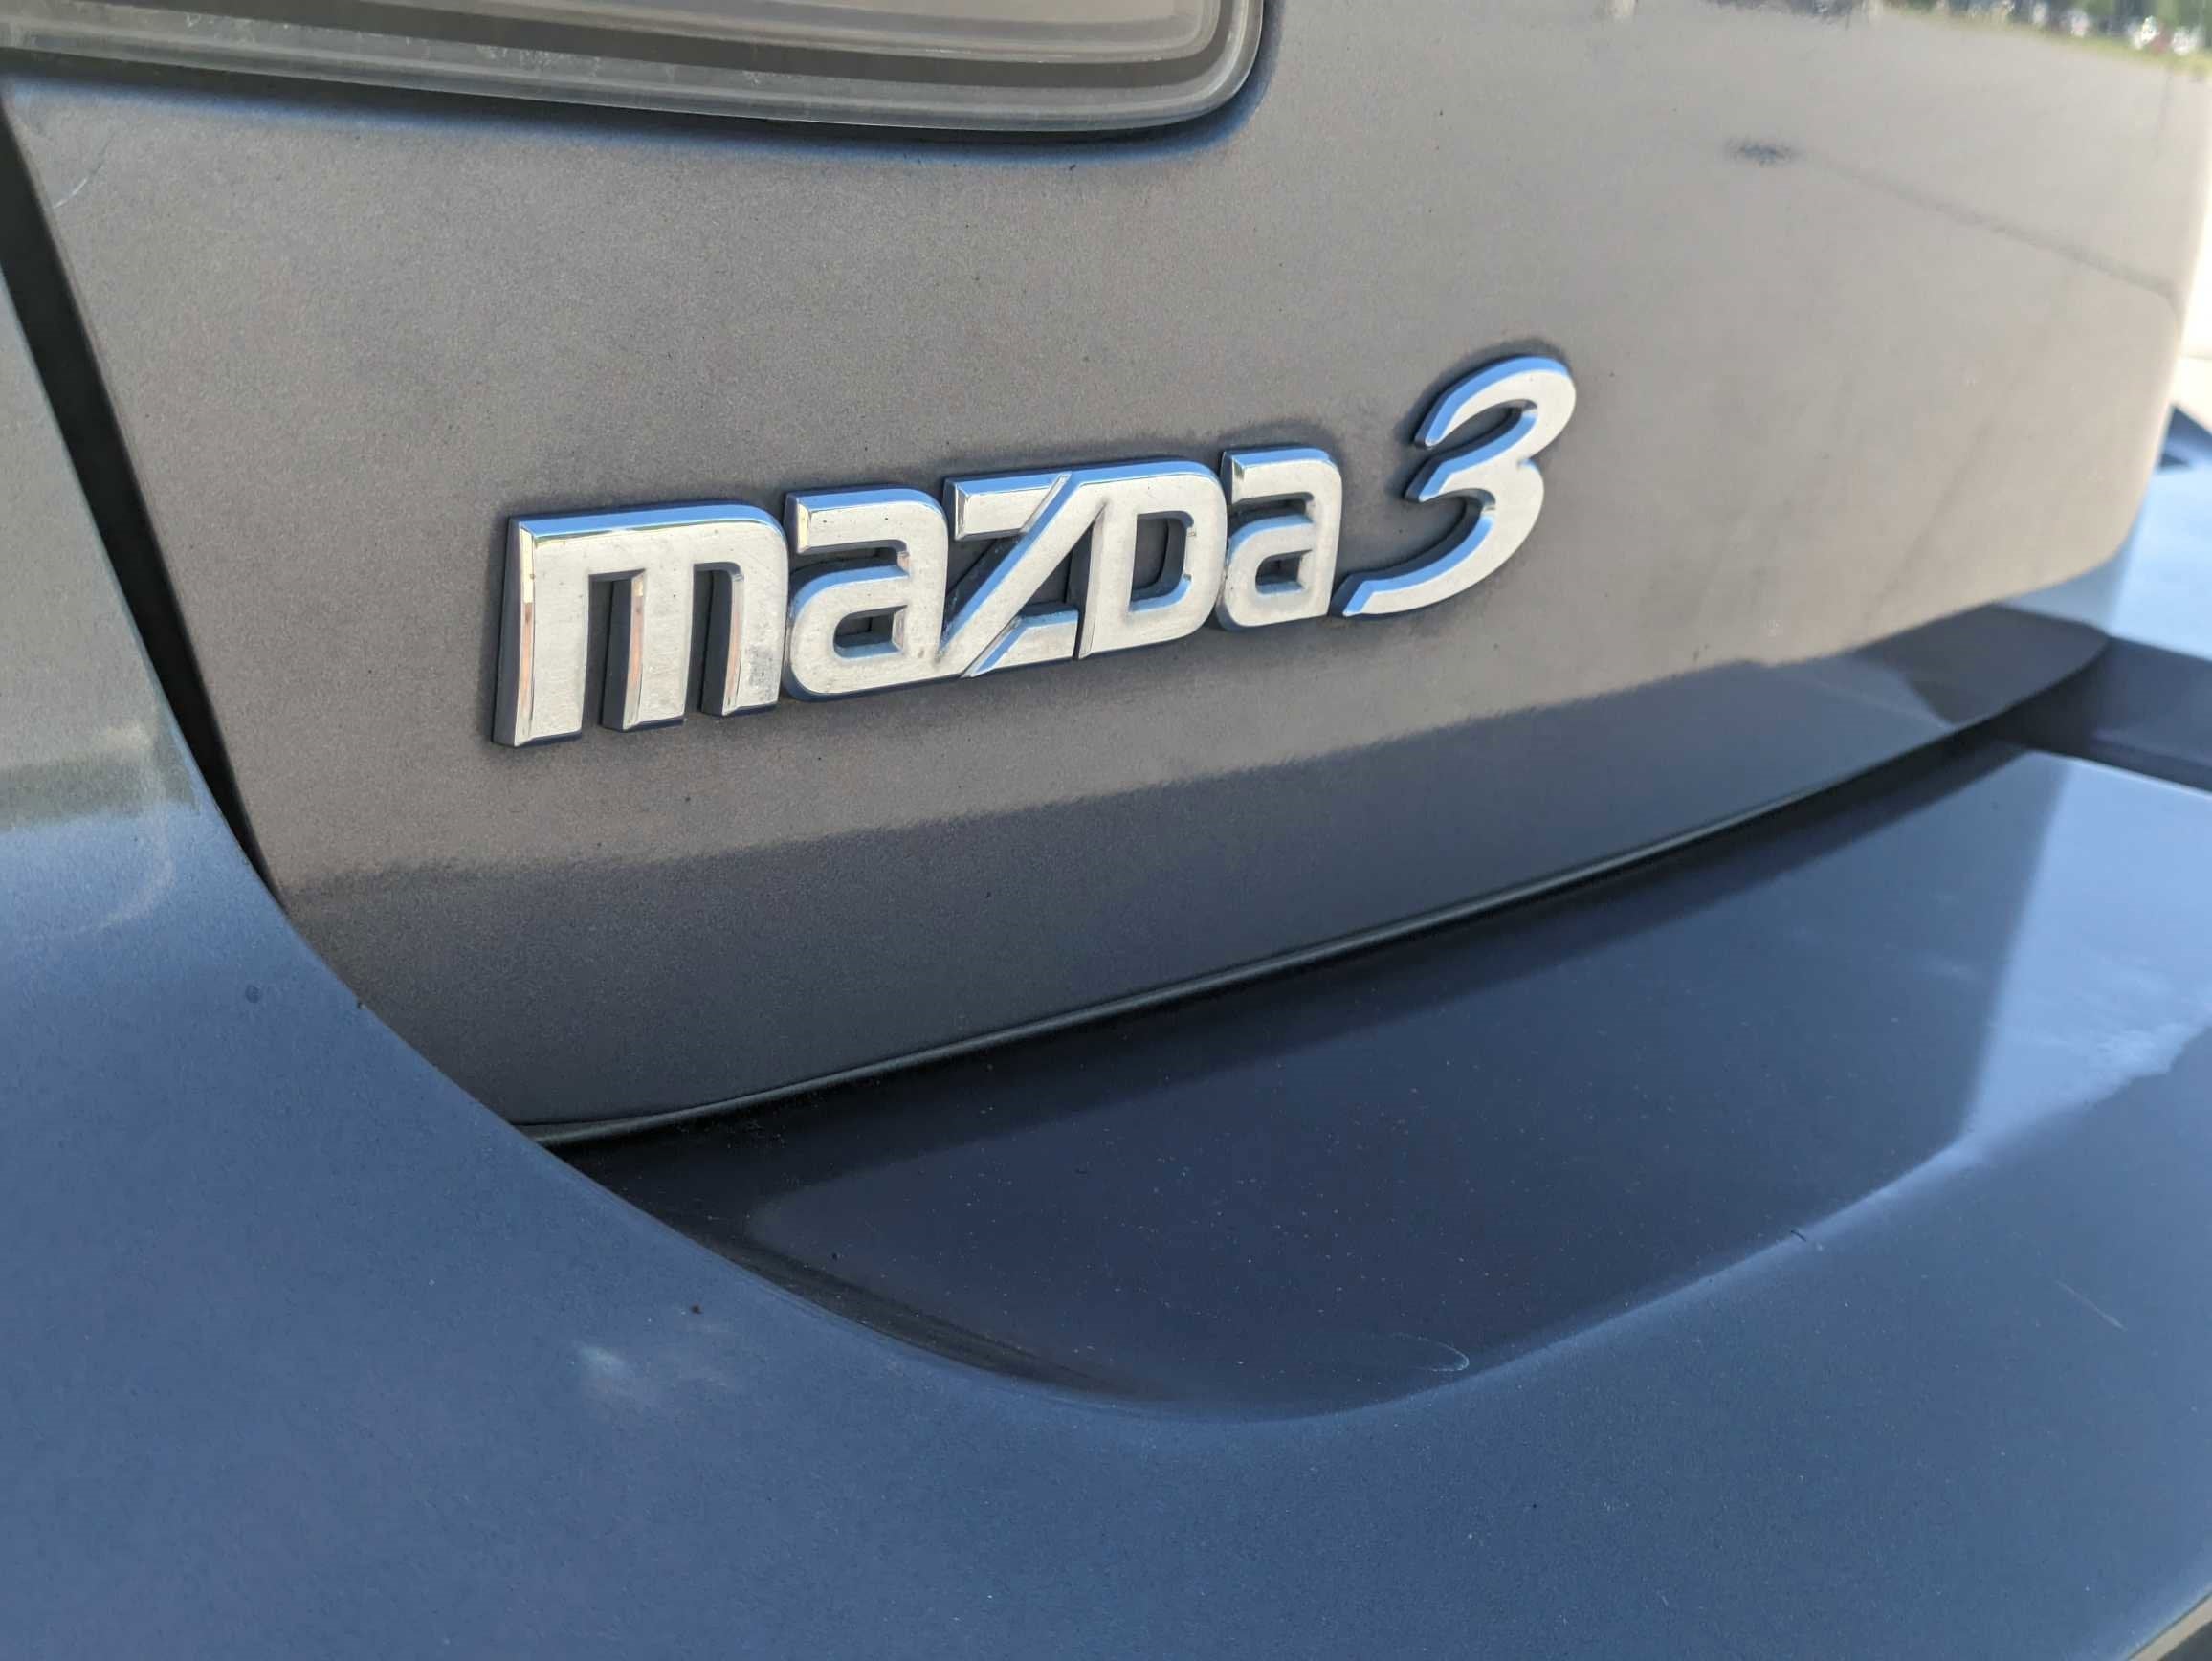 2008 Mazda Mazda3 s Touring *Ltd Avail*